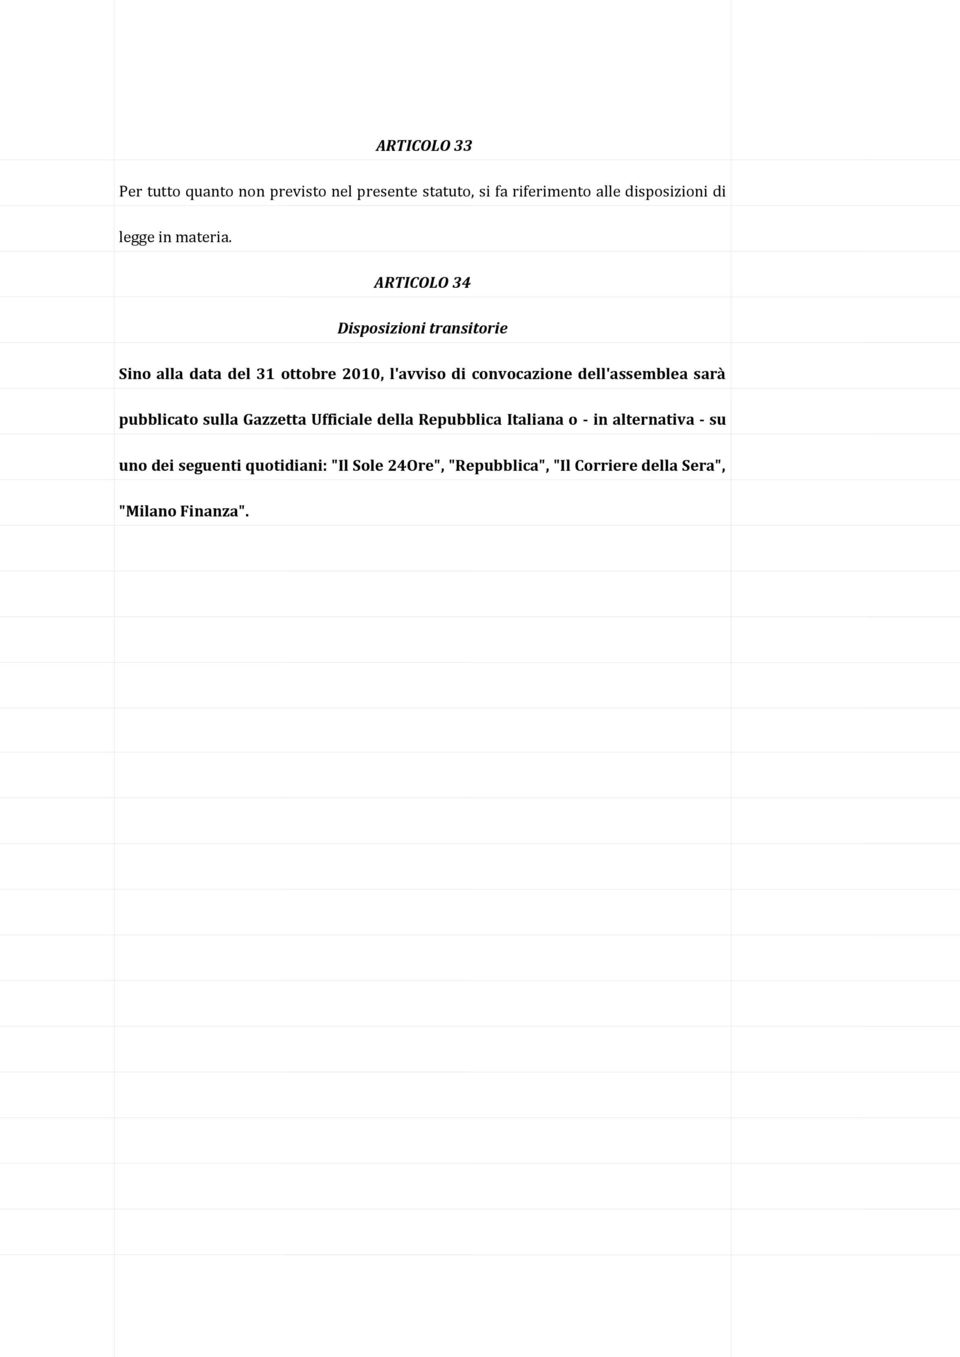 ARTICOLO 34 Disposizioni transitorie Sino alla data del 31 ottobre 2010, l'avviso di convocazione